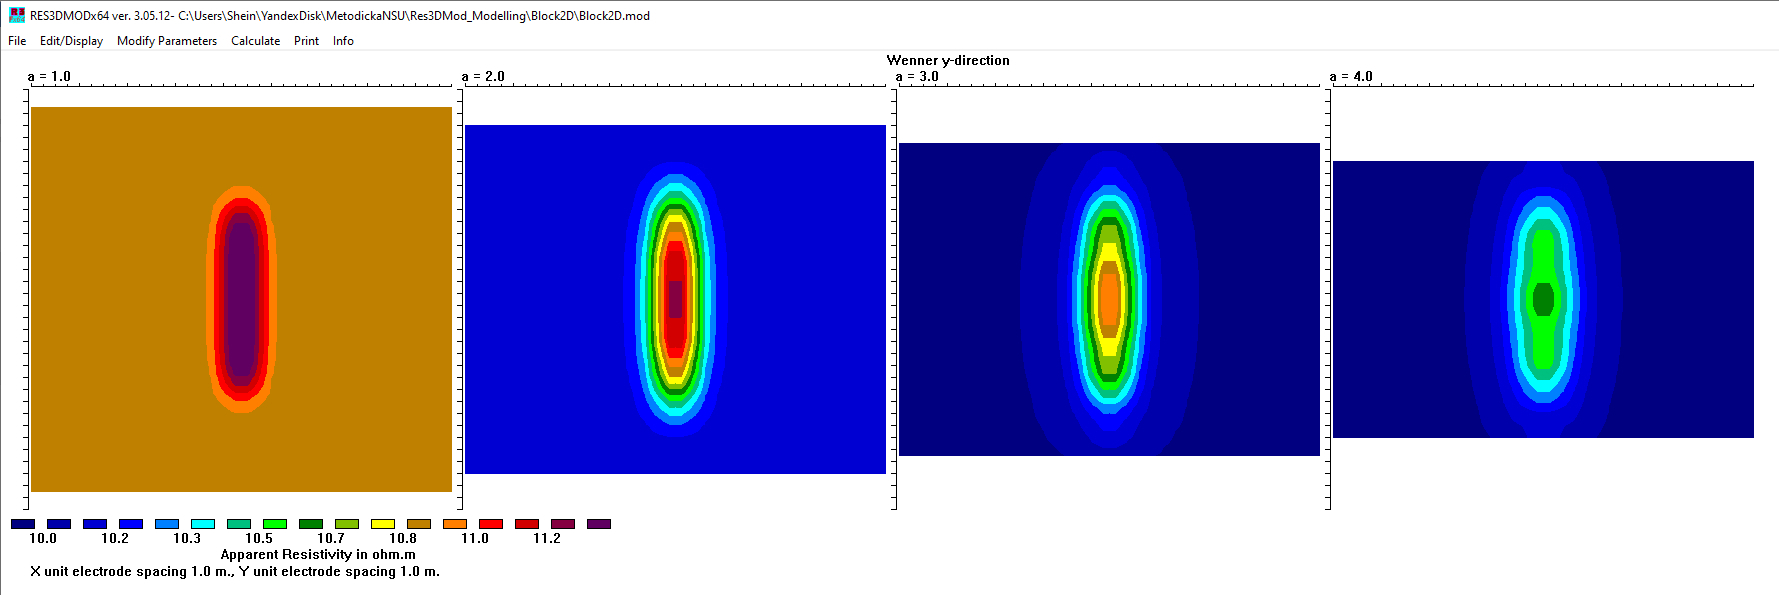 Рис. 40. Отображение рассчитанных данных по нескольким глубинам в плоскости XY для модели Block2D в программе Res3DMod